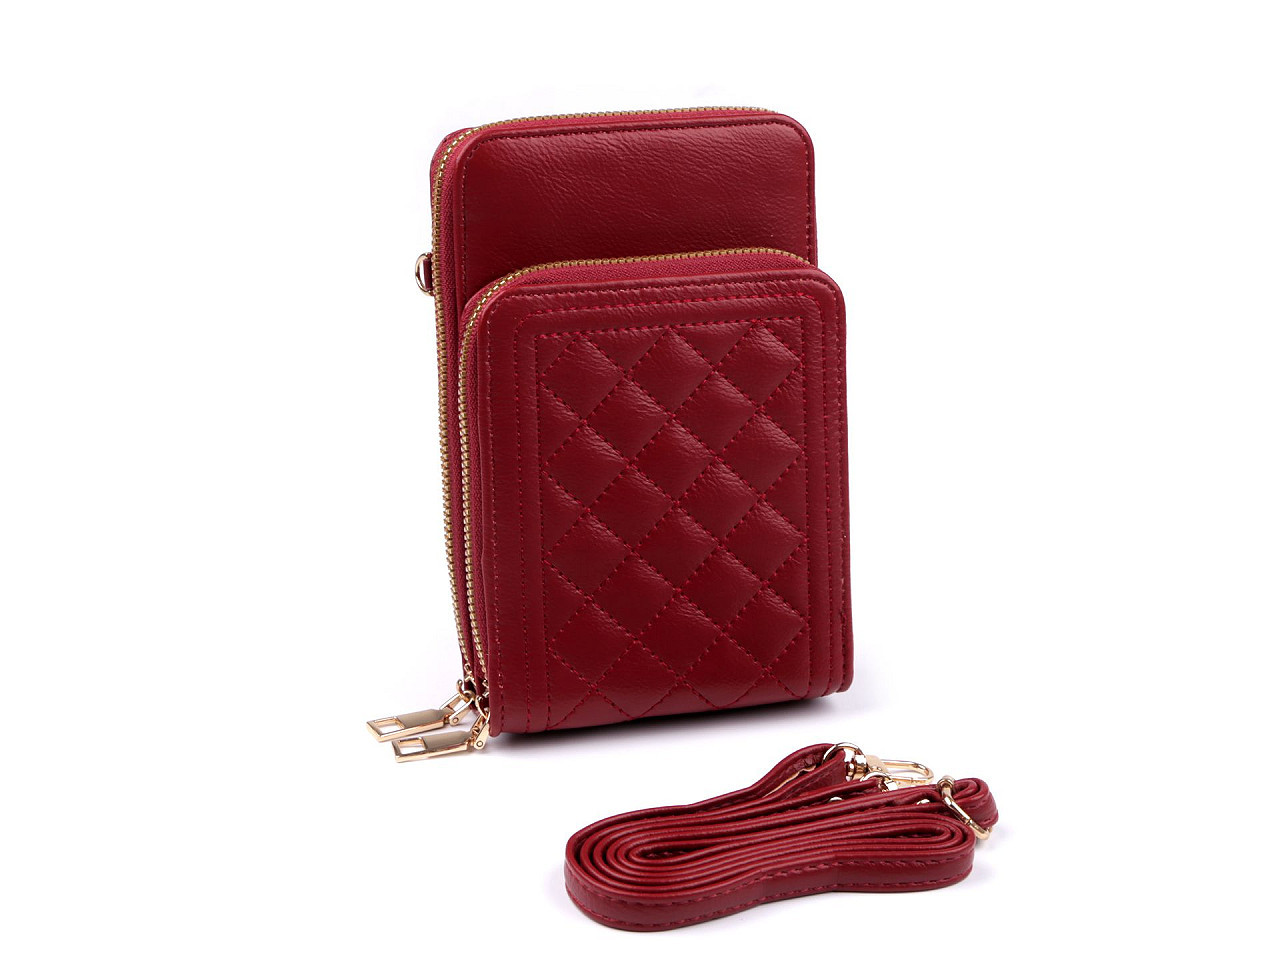 Peněženka s kapsou na mobil přes rameno Crossbody 11x18 cm, barva 8 červená